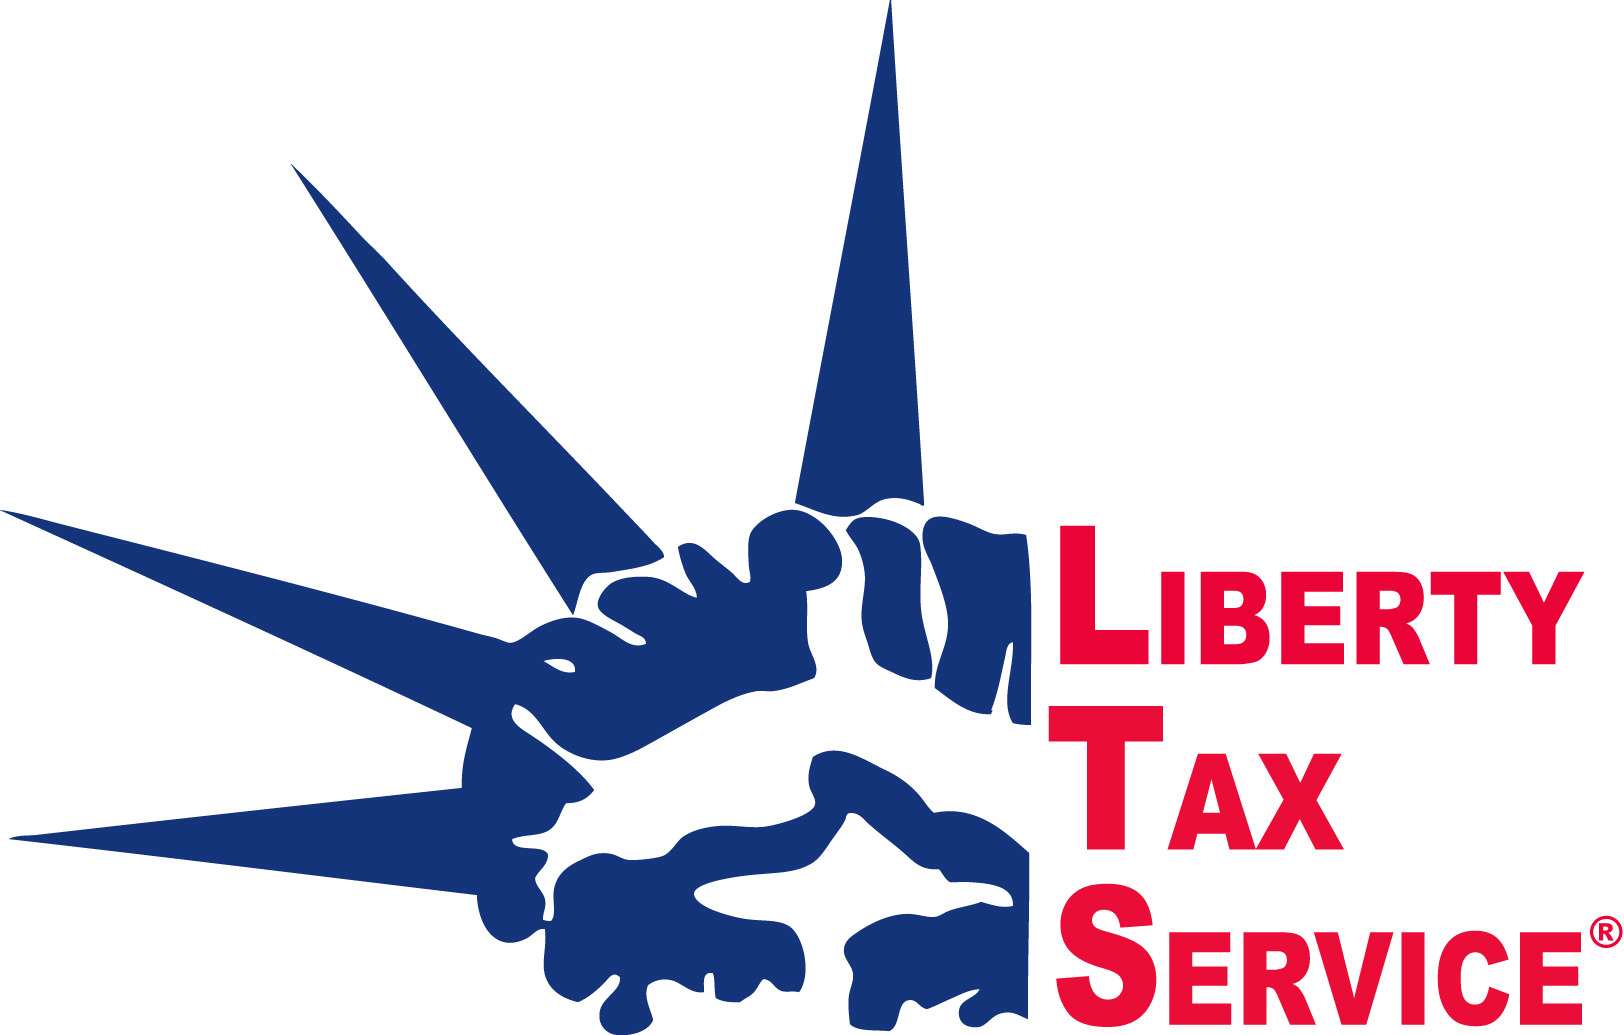 Pro Tax LLC dba Liberty Tax Service